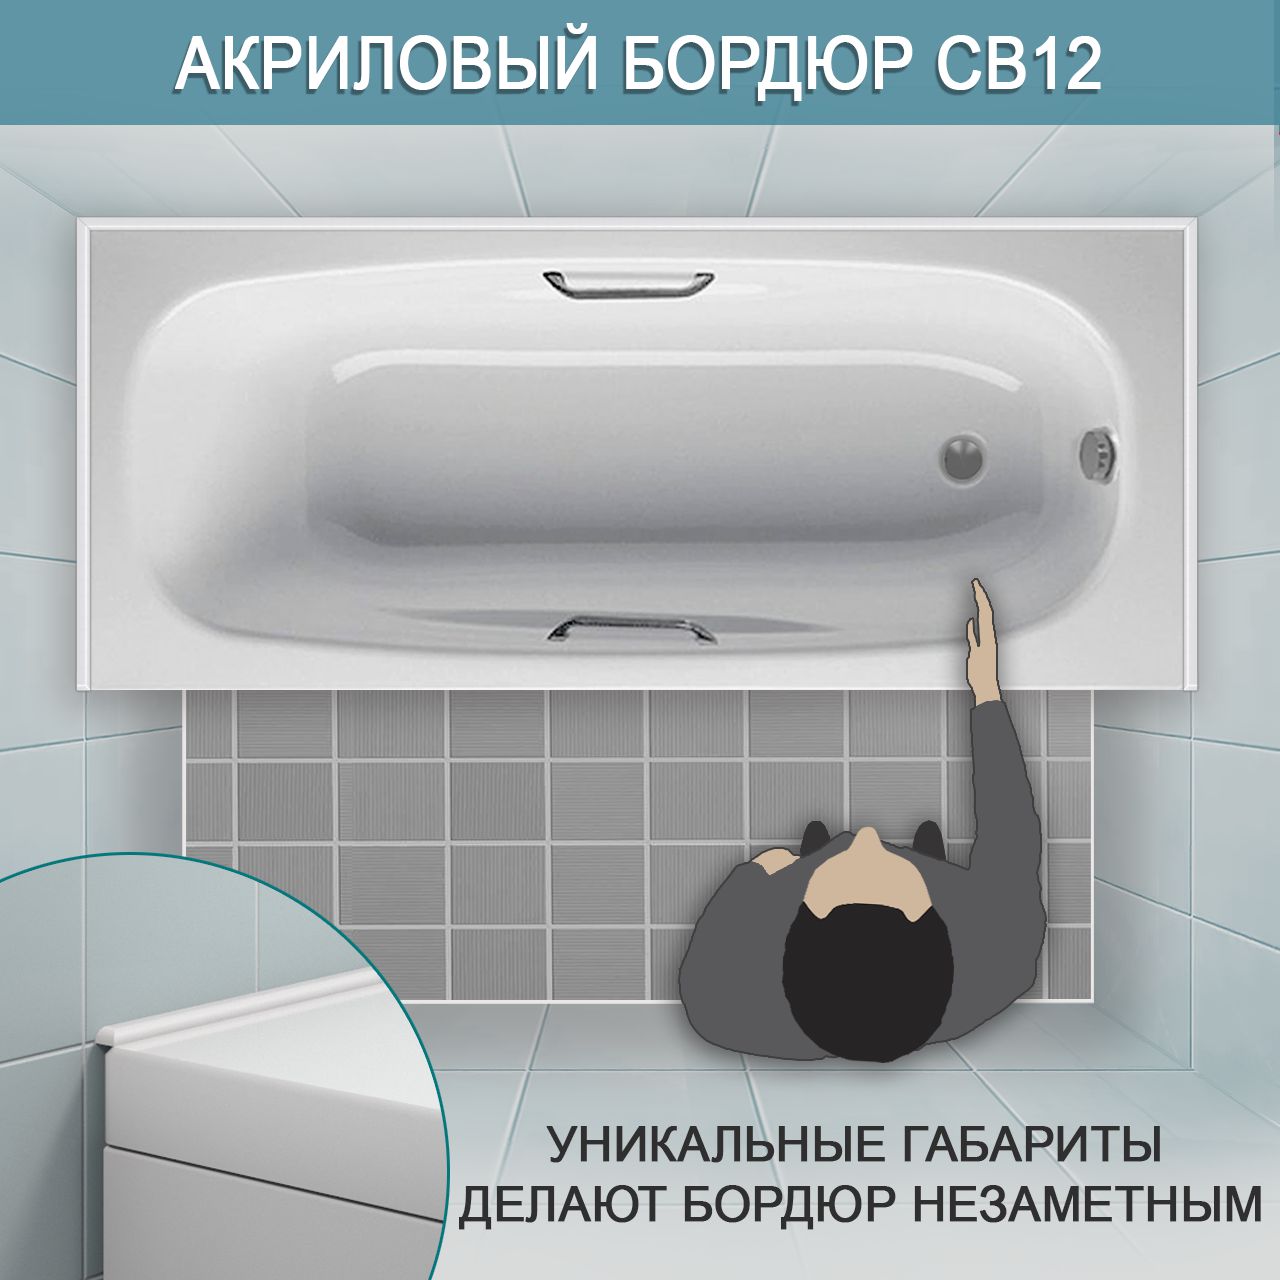 Акриловый бордюр для ванной СВ интернет-магазин BNV